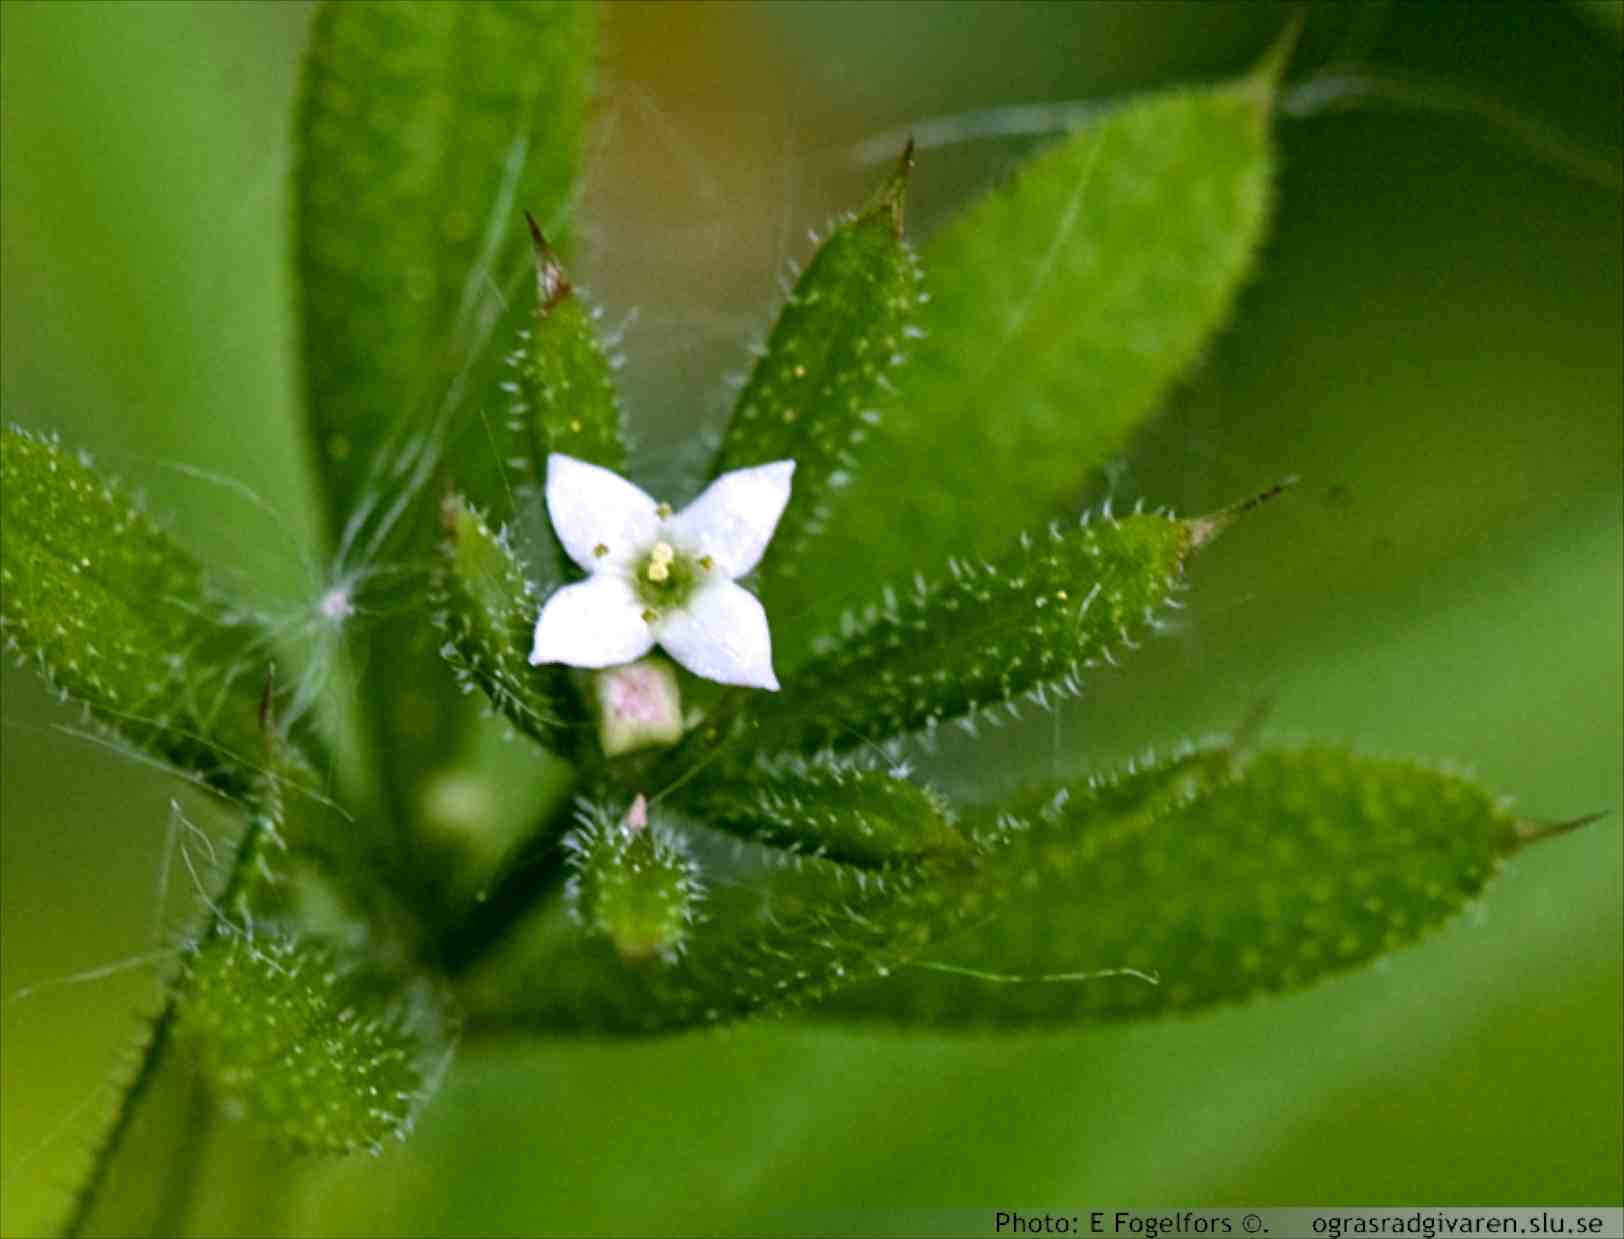 Krona vit, fatlik ca 2 mm bred. Småsnärjmåra (G.spurium ssp. vailantii) har en ca 1 mm bred, grönvit blomma. Ej blommande plantor av dessa båda arter är mycket svåra att skilja från varandra.